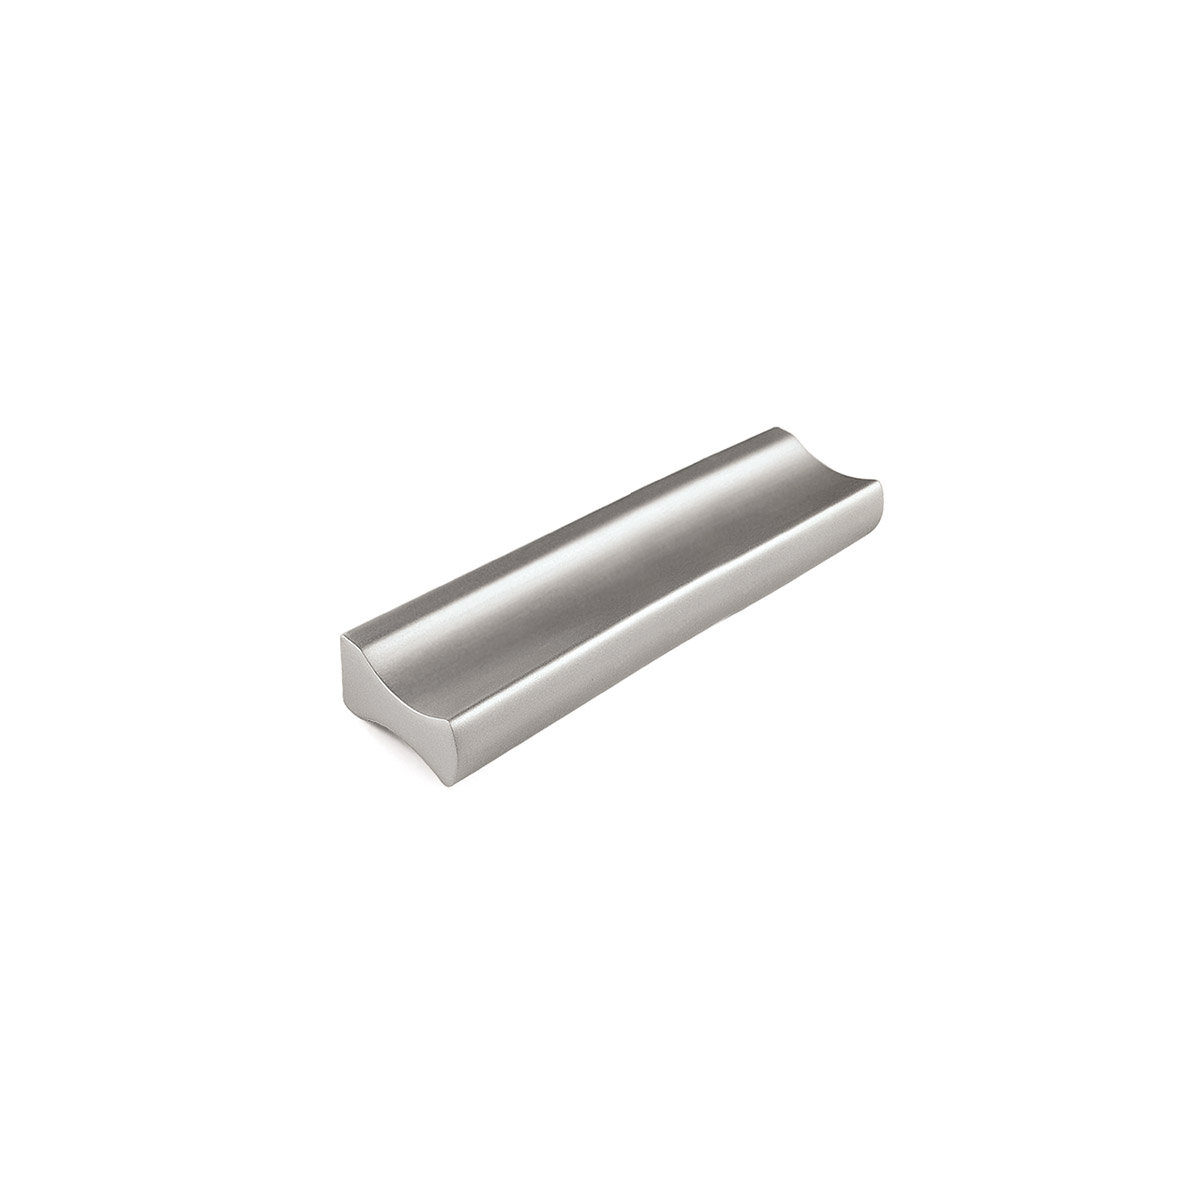 Asa de aluminio con acabado anodizado mate, dimensiones:88x9x17mm y entrepuntos:64mm